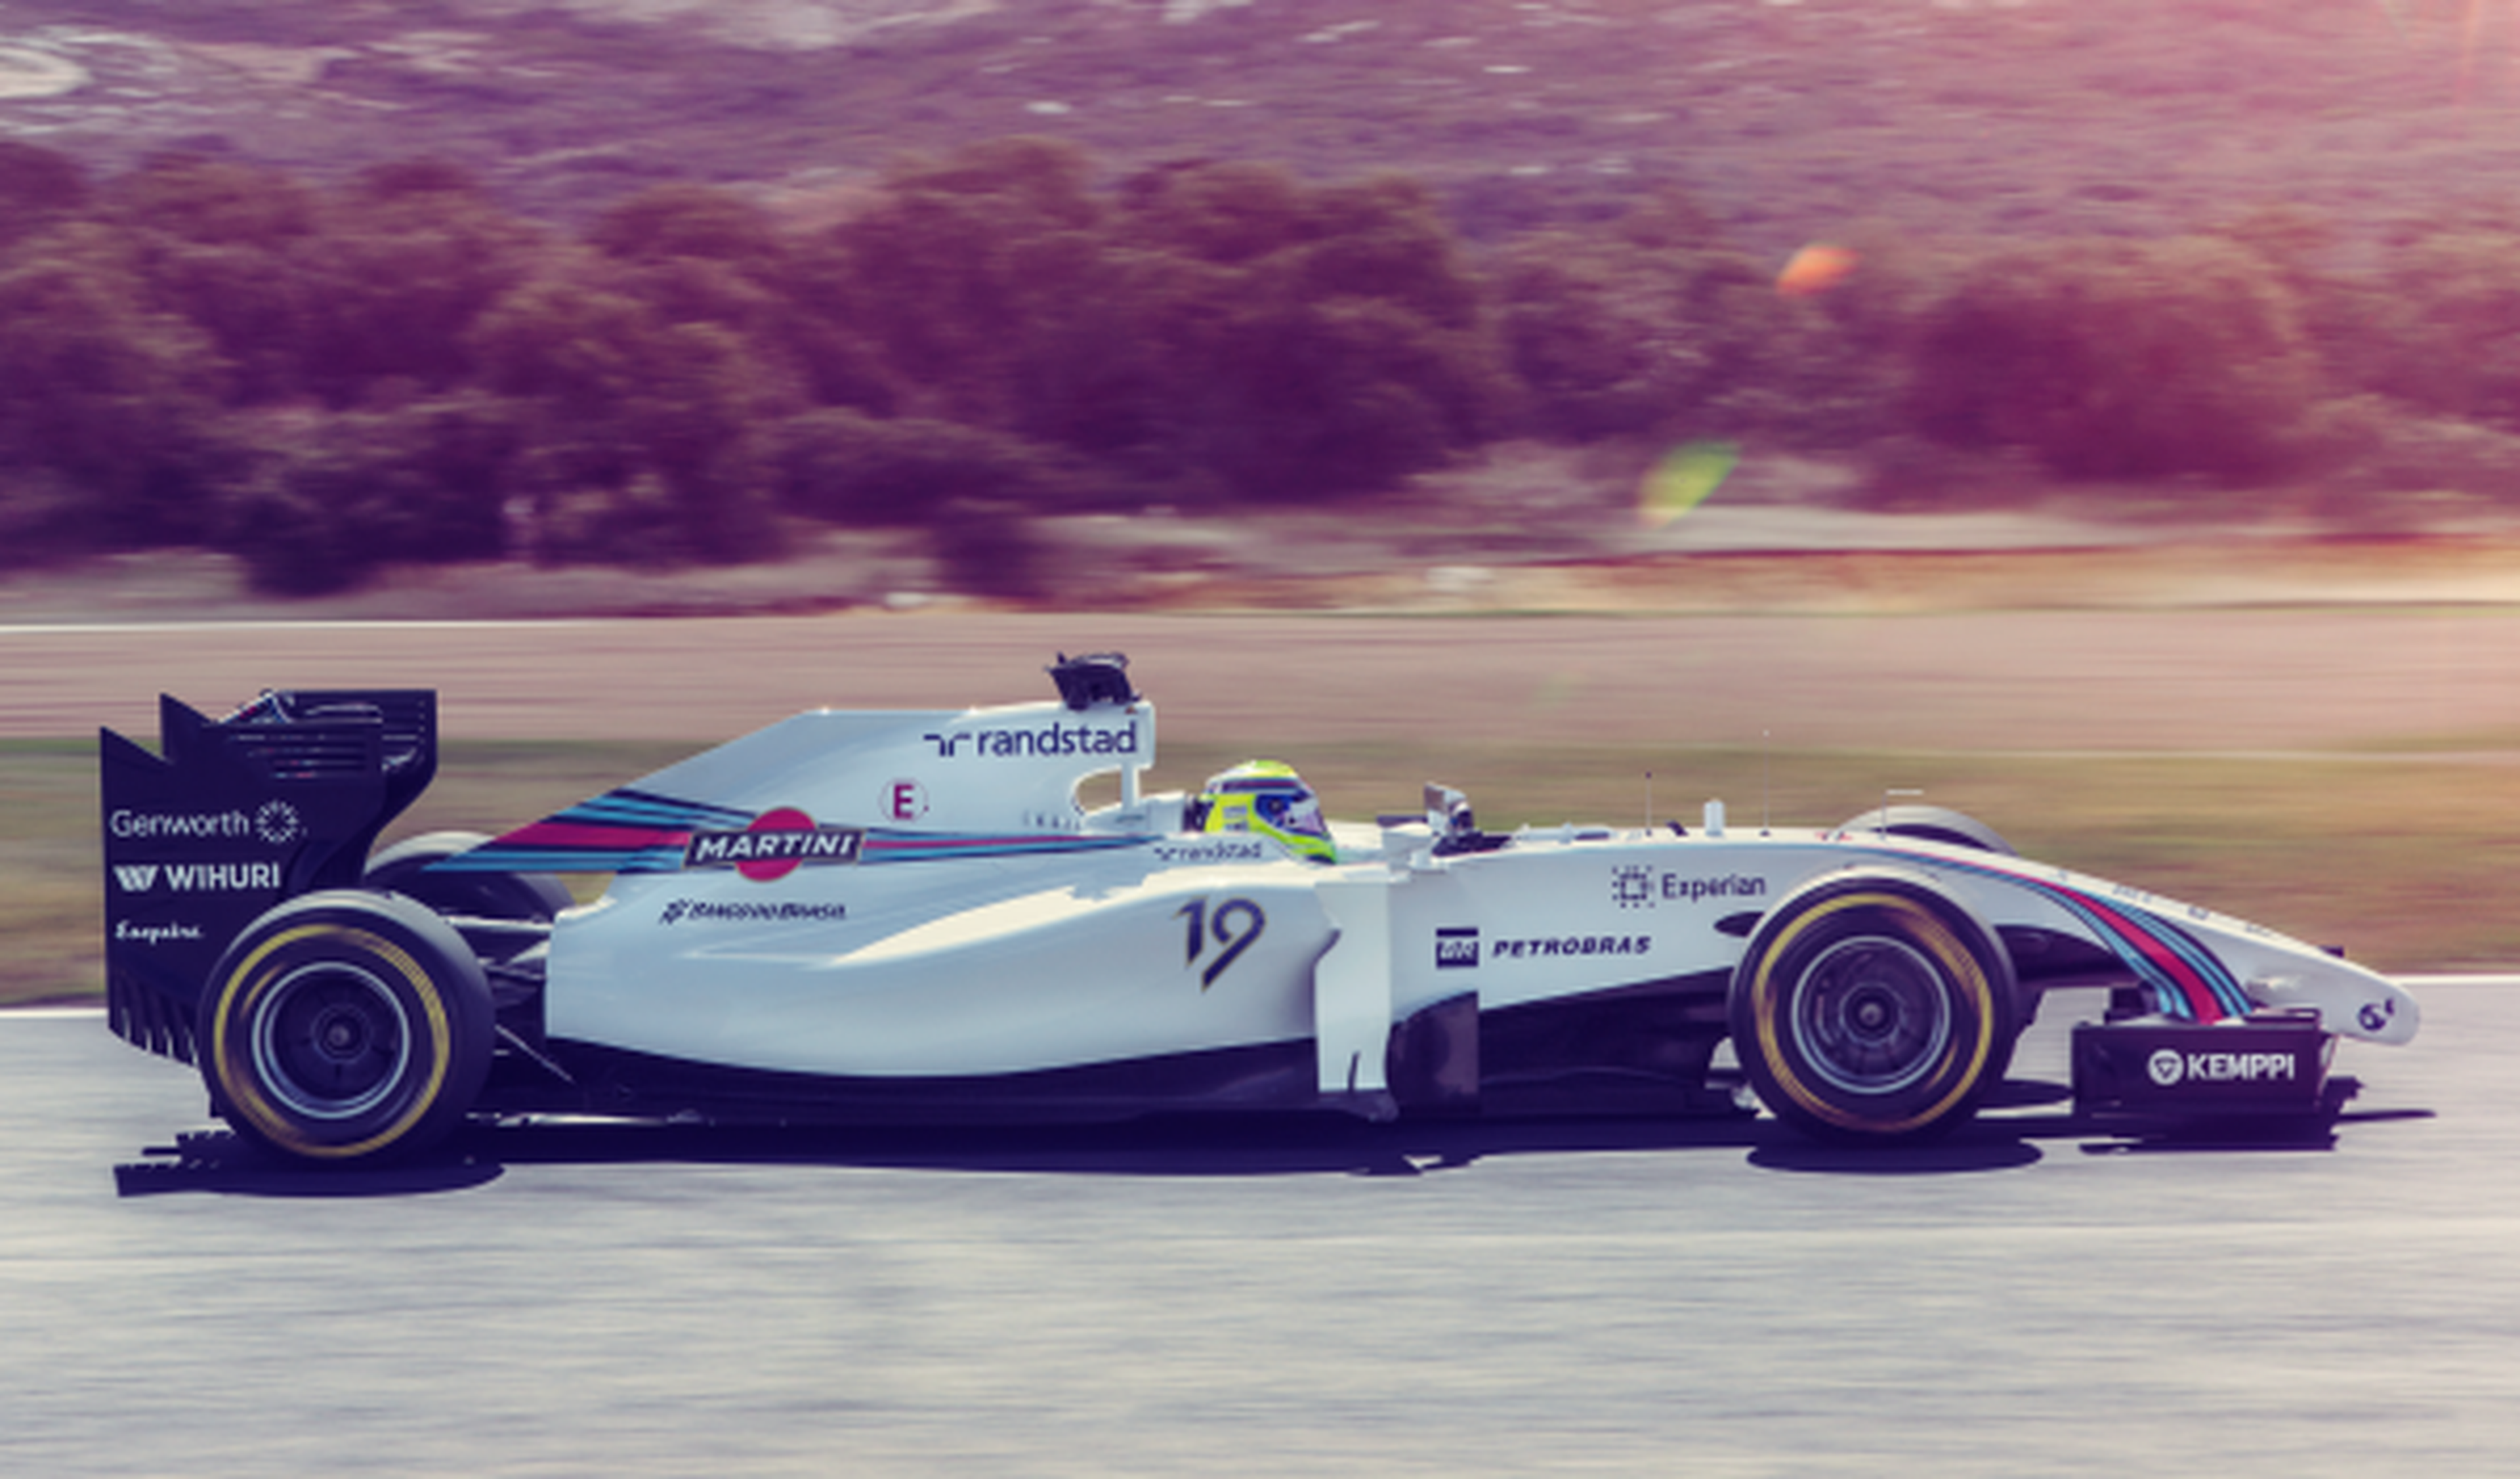 Williams Martini F1 lateral